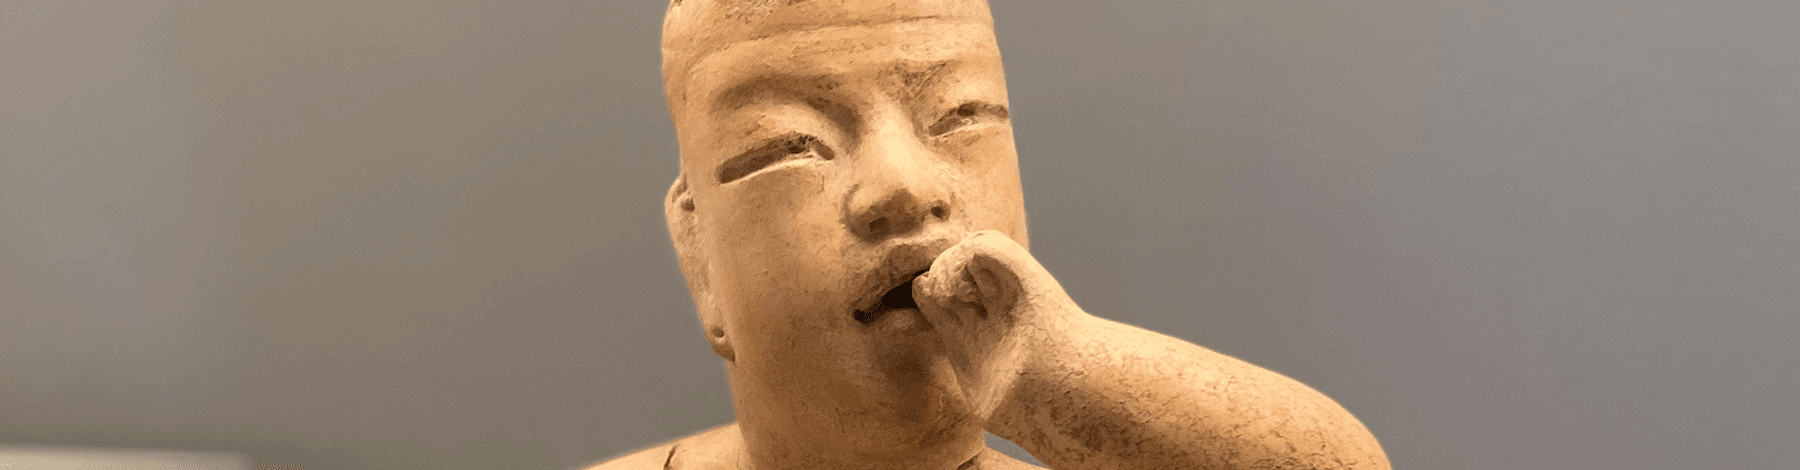 Hombre que se lleva la mano a la boca | Museo Amparo, Puebla | Museo Amparo, Puebla.